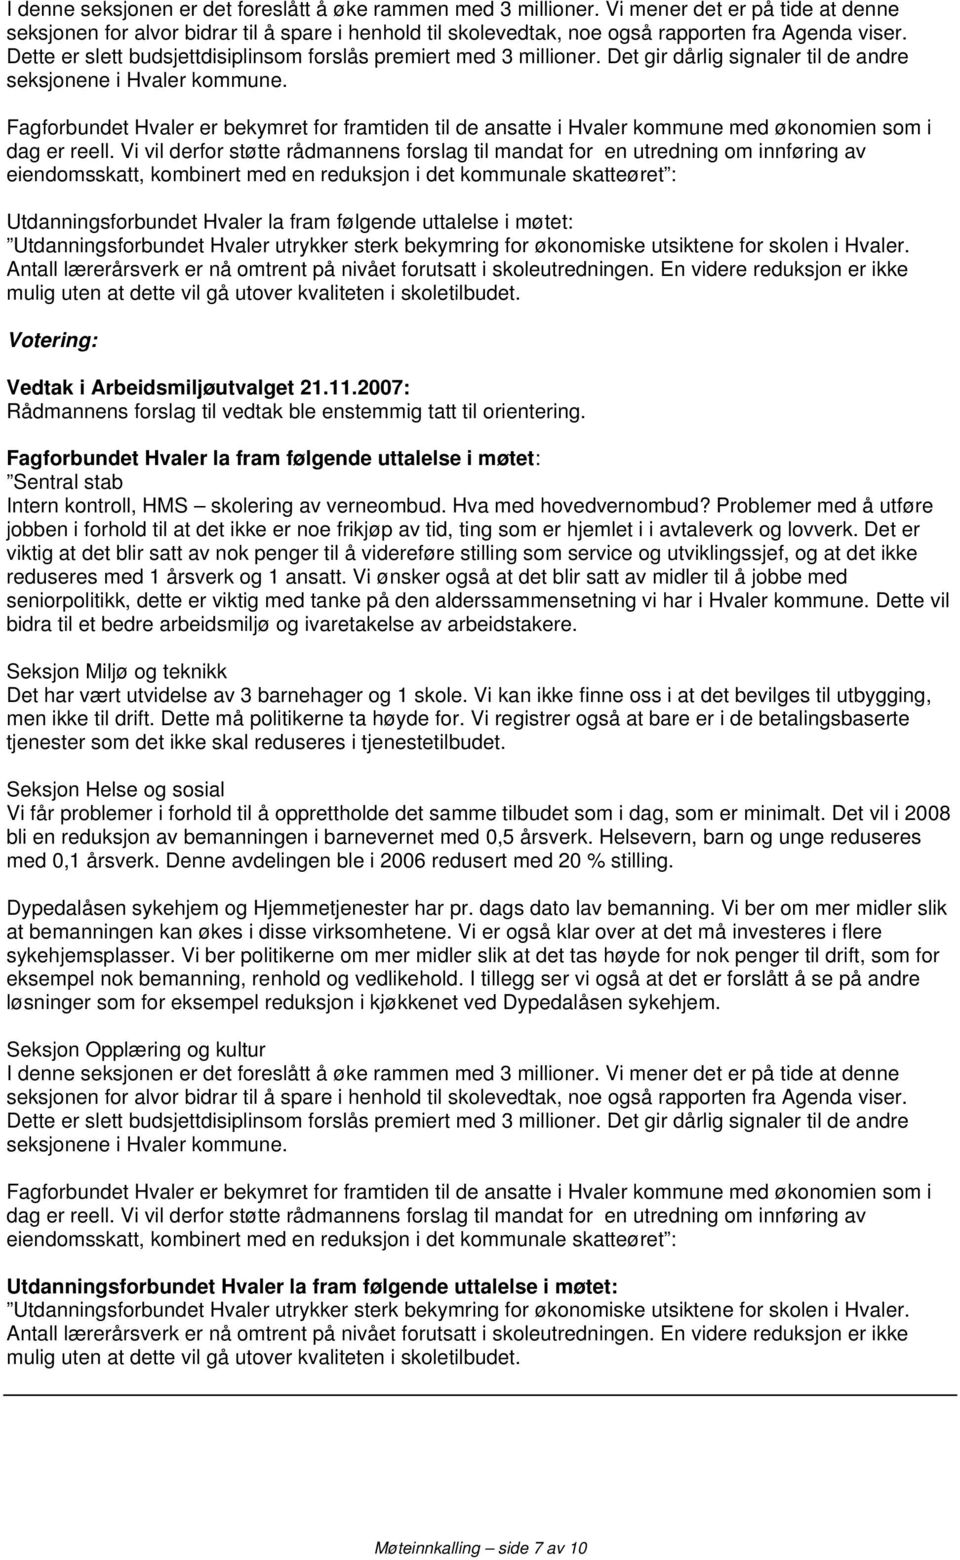 Fagforbundet Hvaler er bekymret for framtiden til de ansatte i Hvaler kommune med økonomien som i dag er reell.